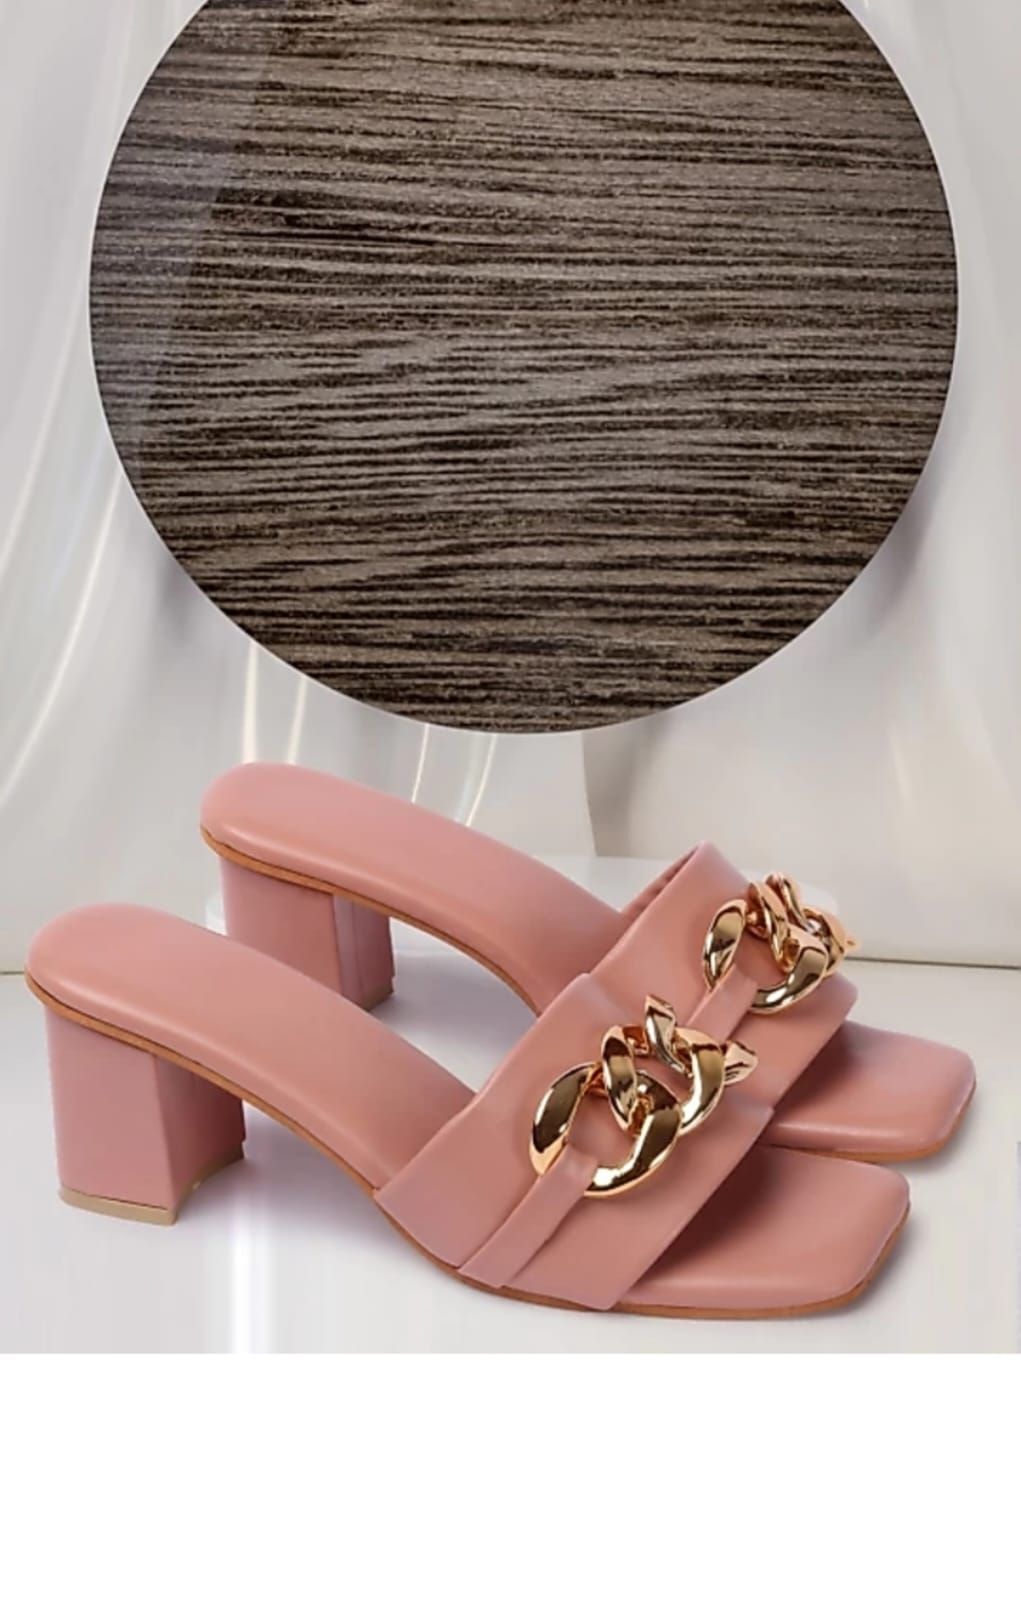 Elegant heels sandal for girls and women